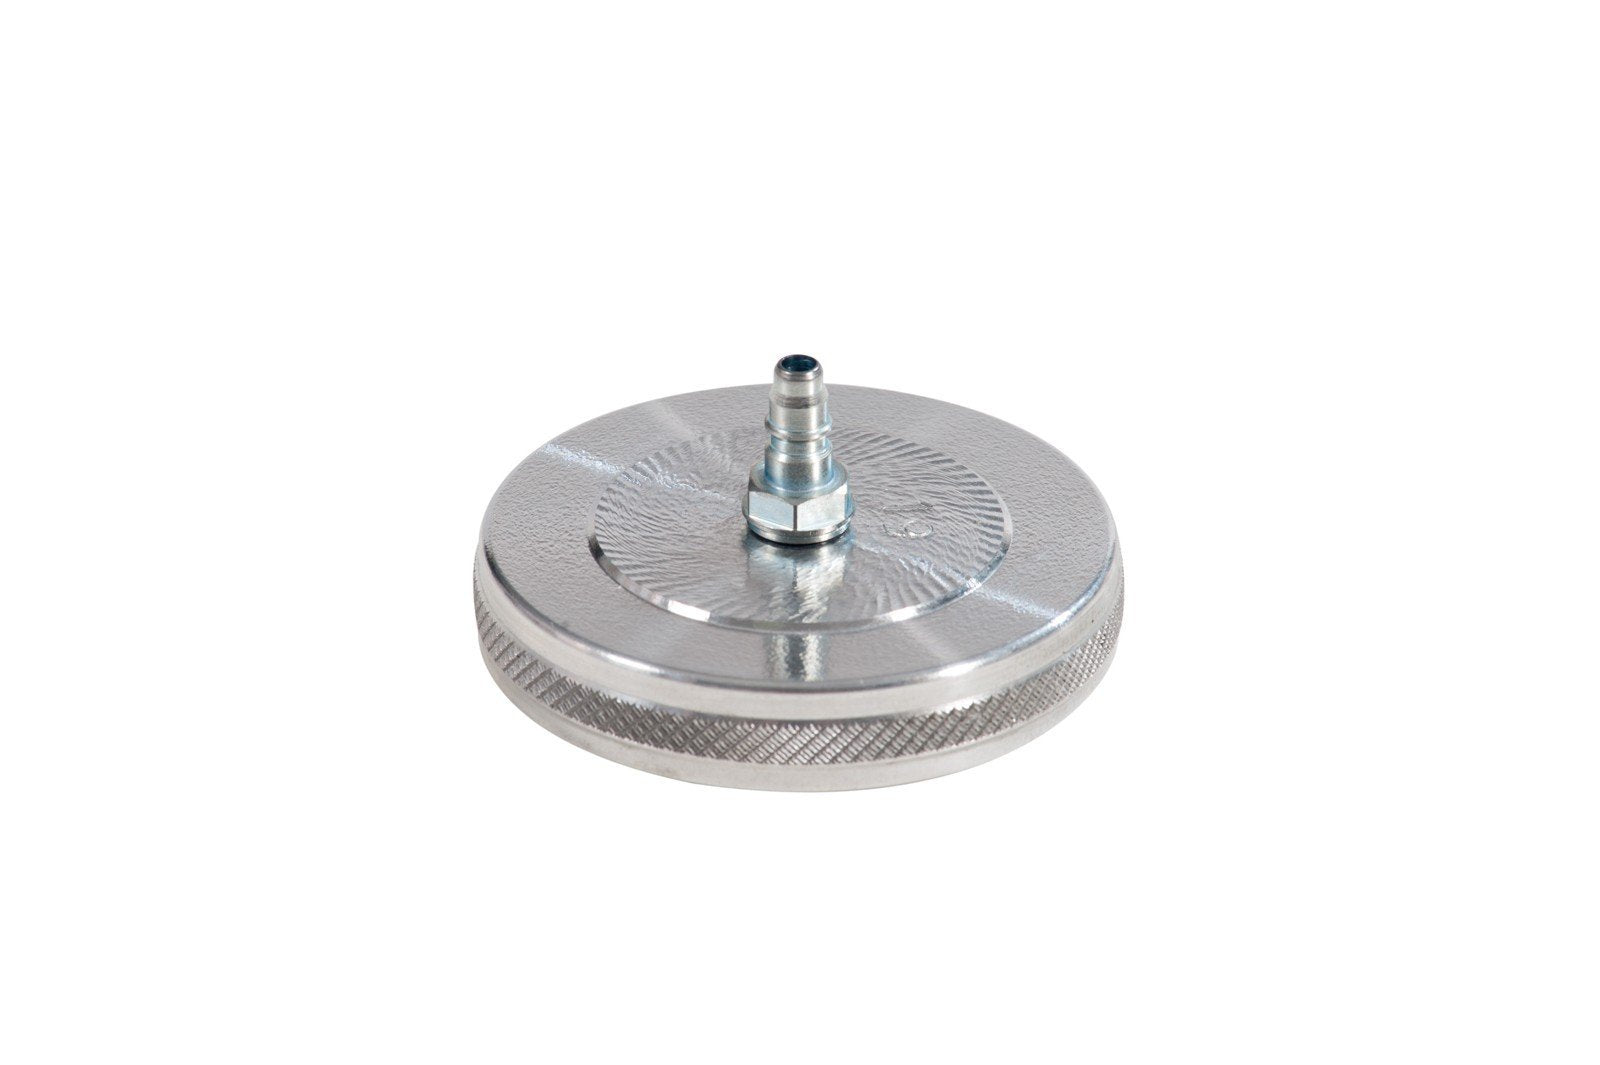 083-1819-000 - Screw plug model 19 diameter 75.5